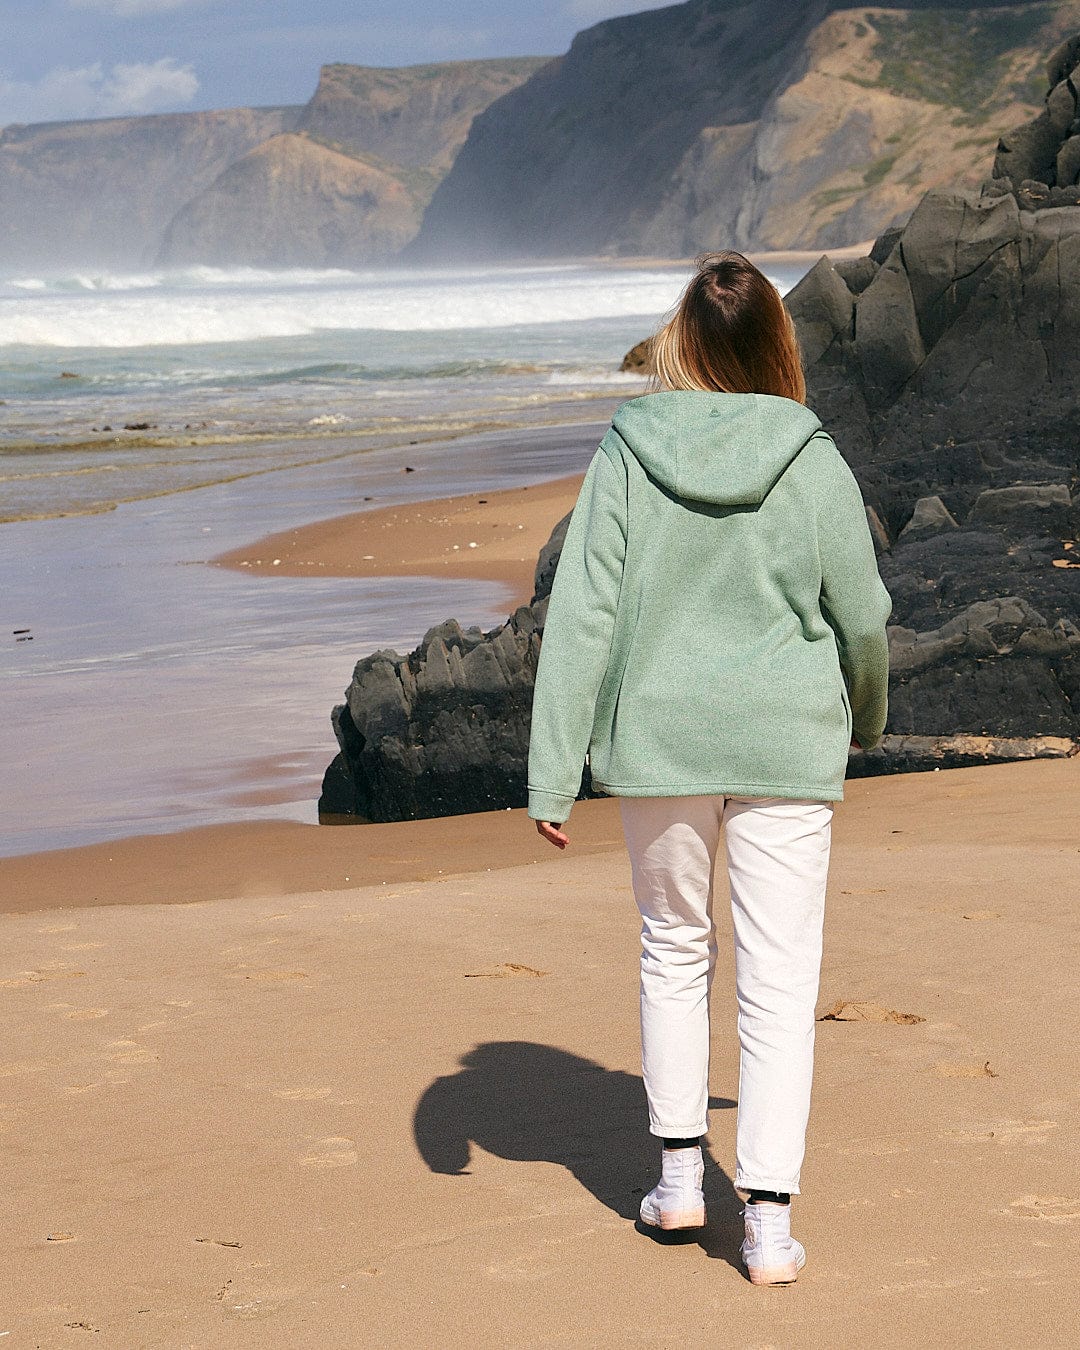 A woman walking on a beach near the ocean wearing the Saltrock Galaksea - Womens 1/4 Zip Fleece in Light Green.